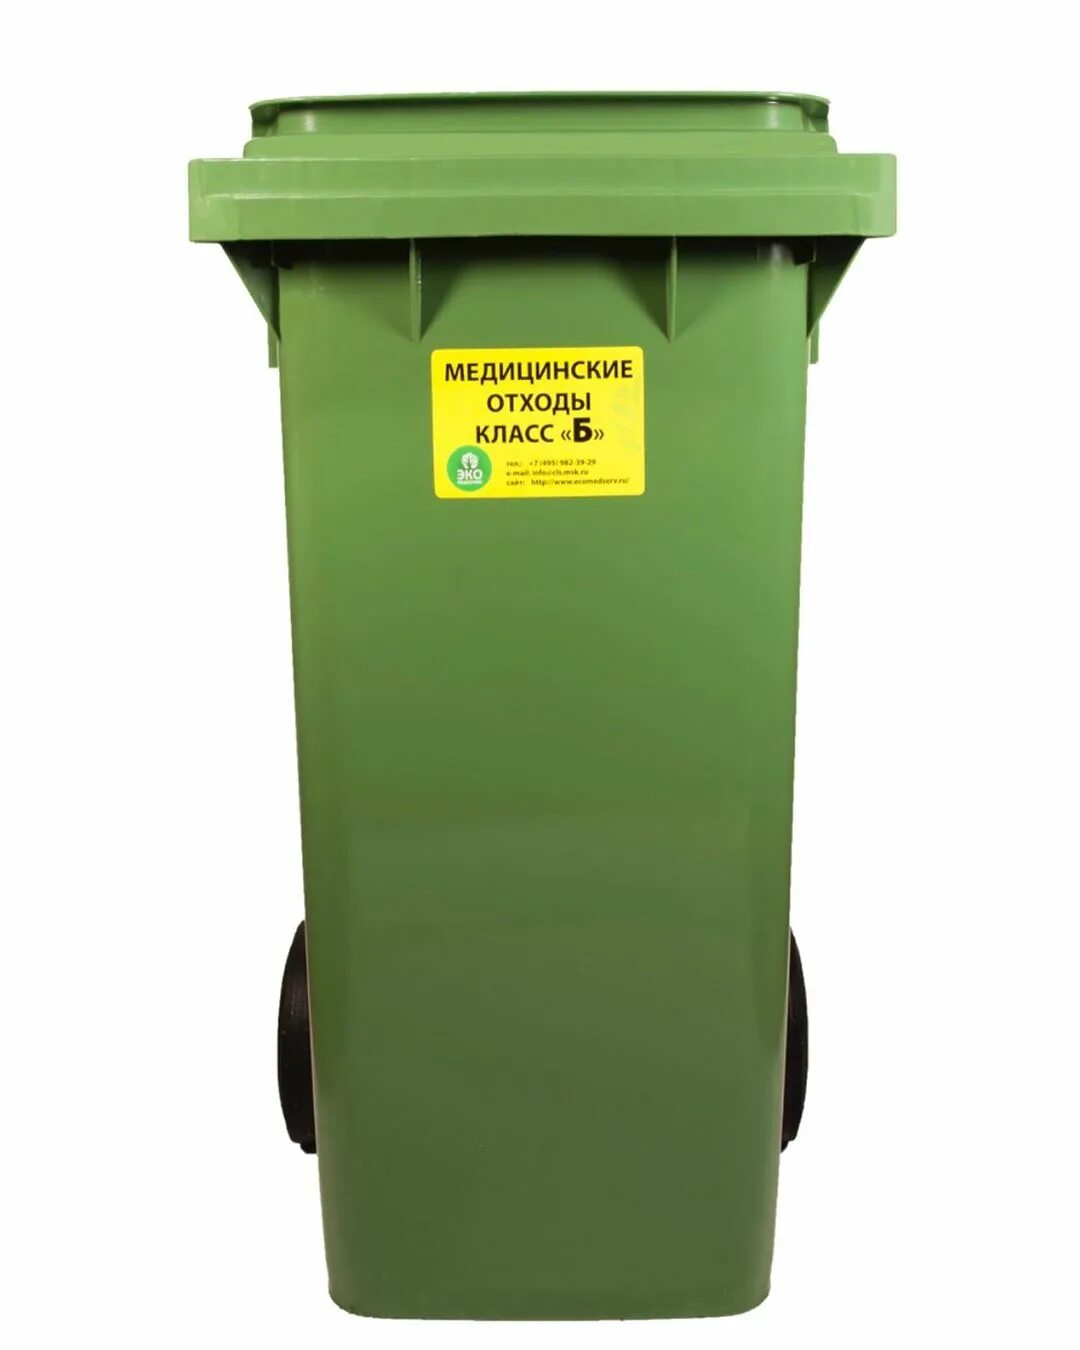 Бак для отходов ЦР15.189.00.000. Контейнеры для медицинских отходов. Для сбора отходов используются